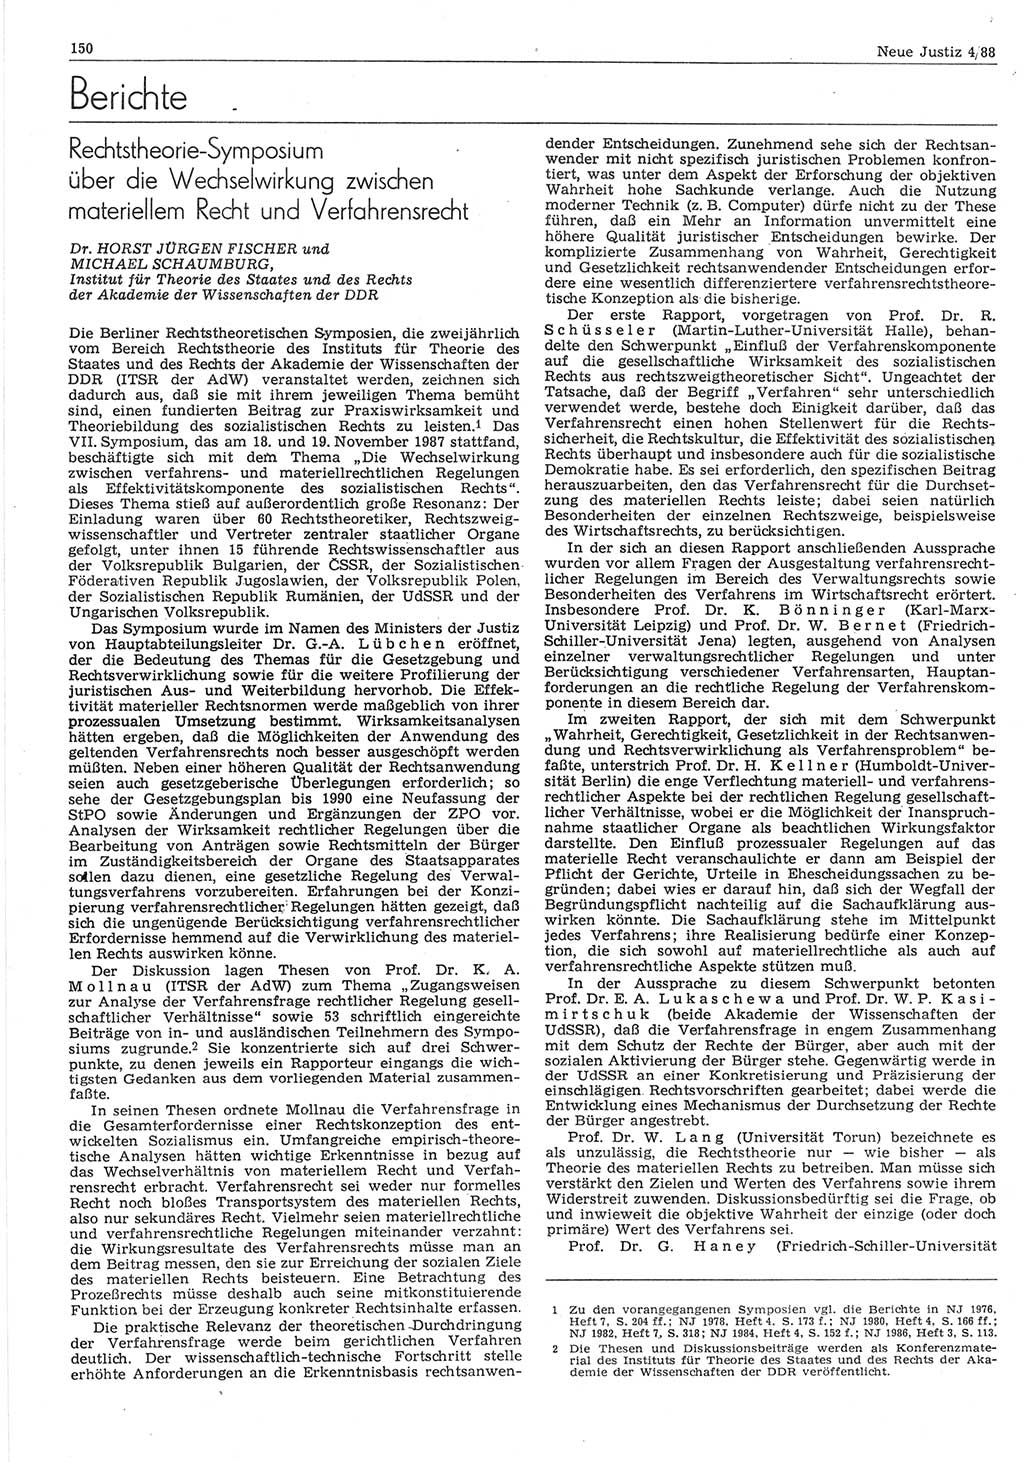 Neue Justiz (NJ), Zeitschrift für sozialistisches Recht und Gesetzlichkeit [Deutsche Demokratische Republik (DDR)], 42. Jahrgang 1988, Seite 150 (NJ DDR 1988, S. 150)